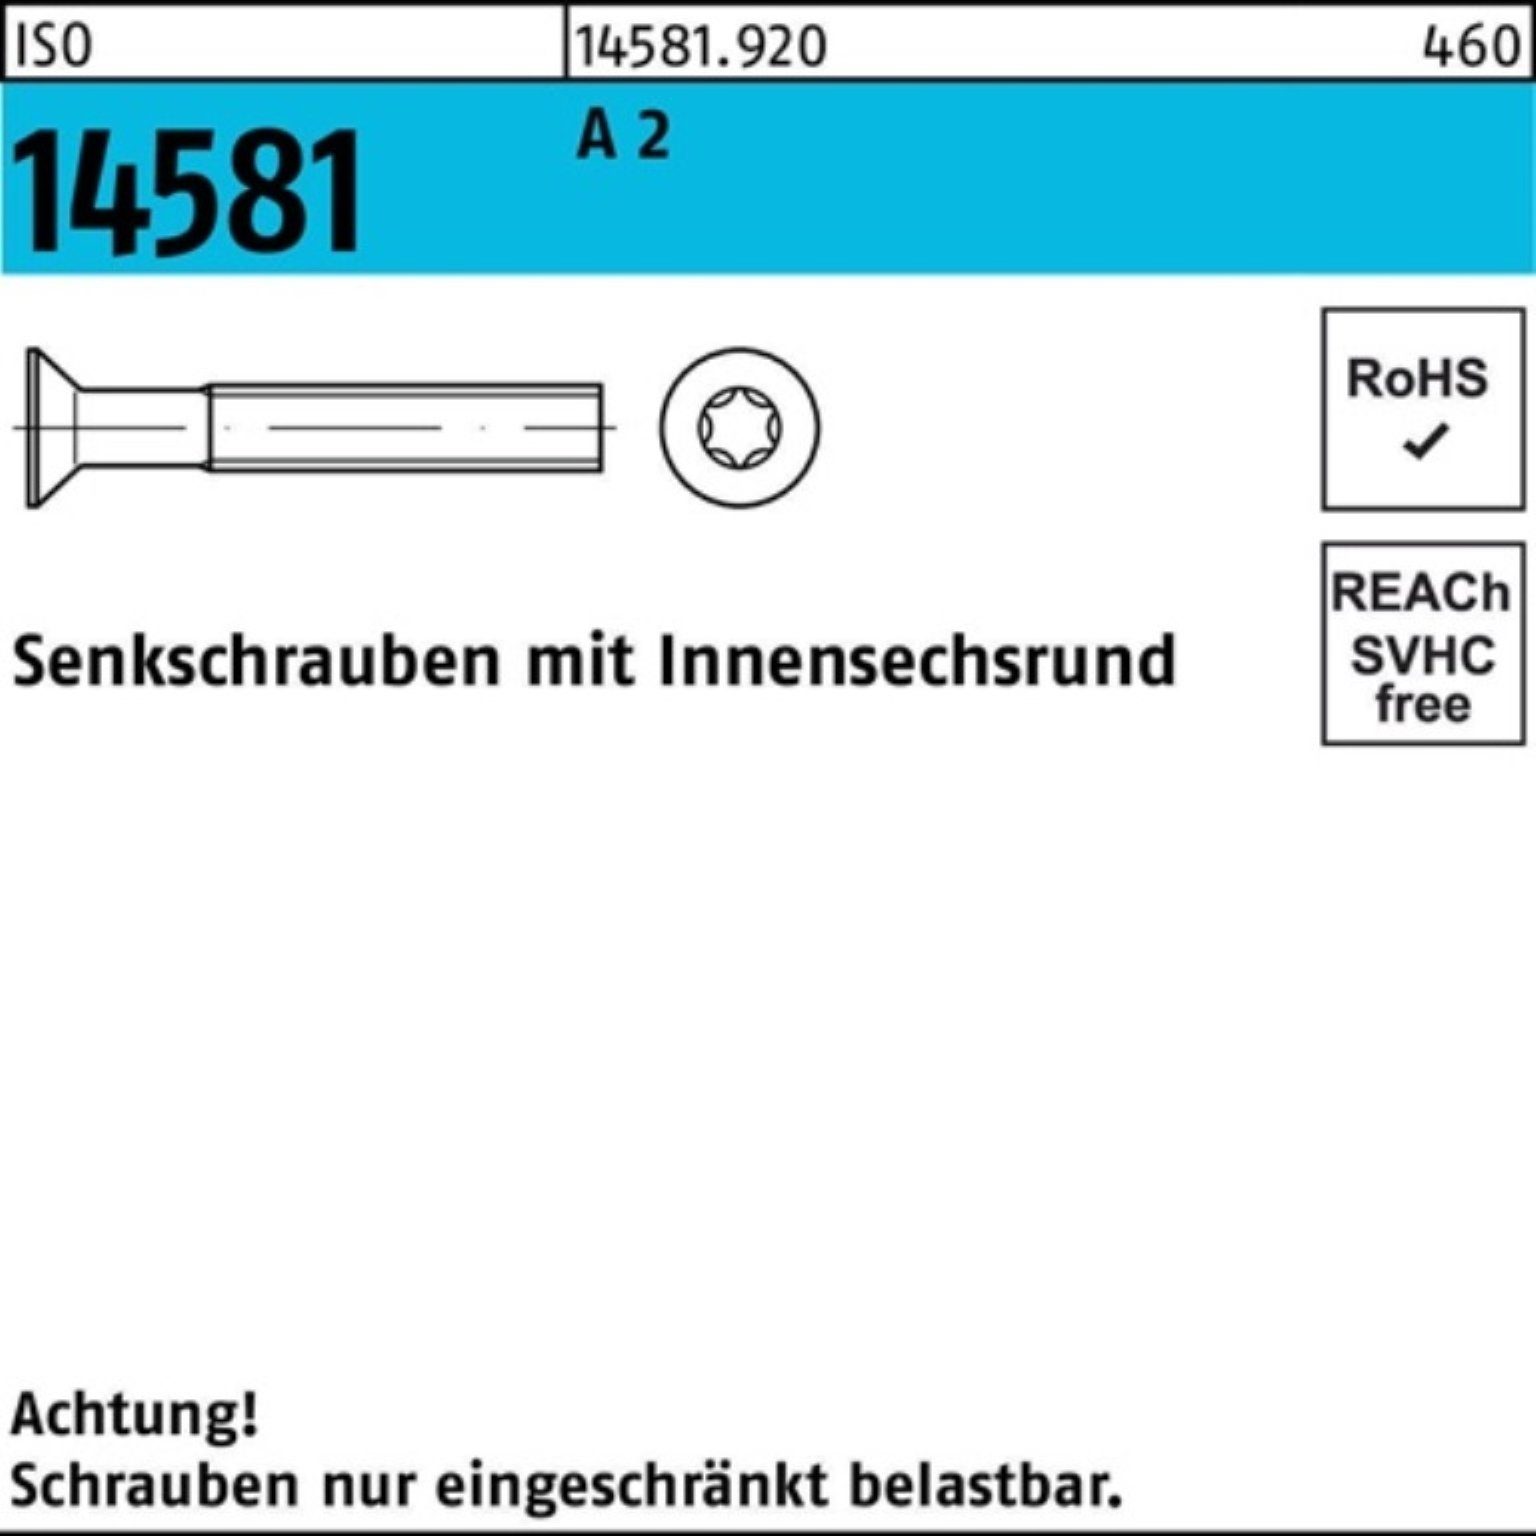 Reyher Senkschraube 500er Senkschraube ISO M5x 145 ISR 500 2 Stück Pack A ISO 8 T25 14581